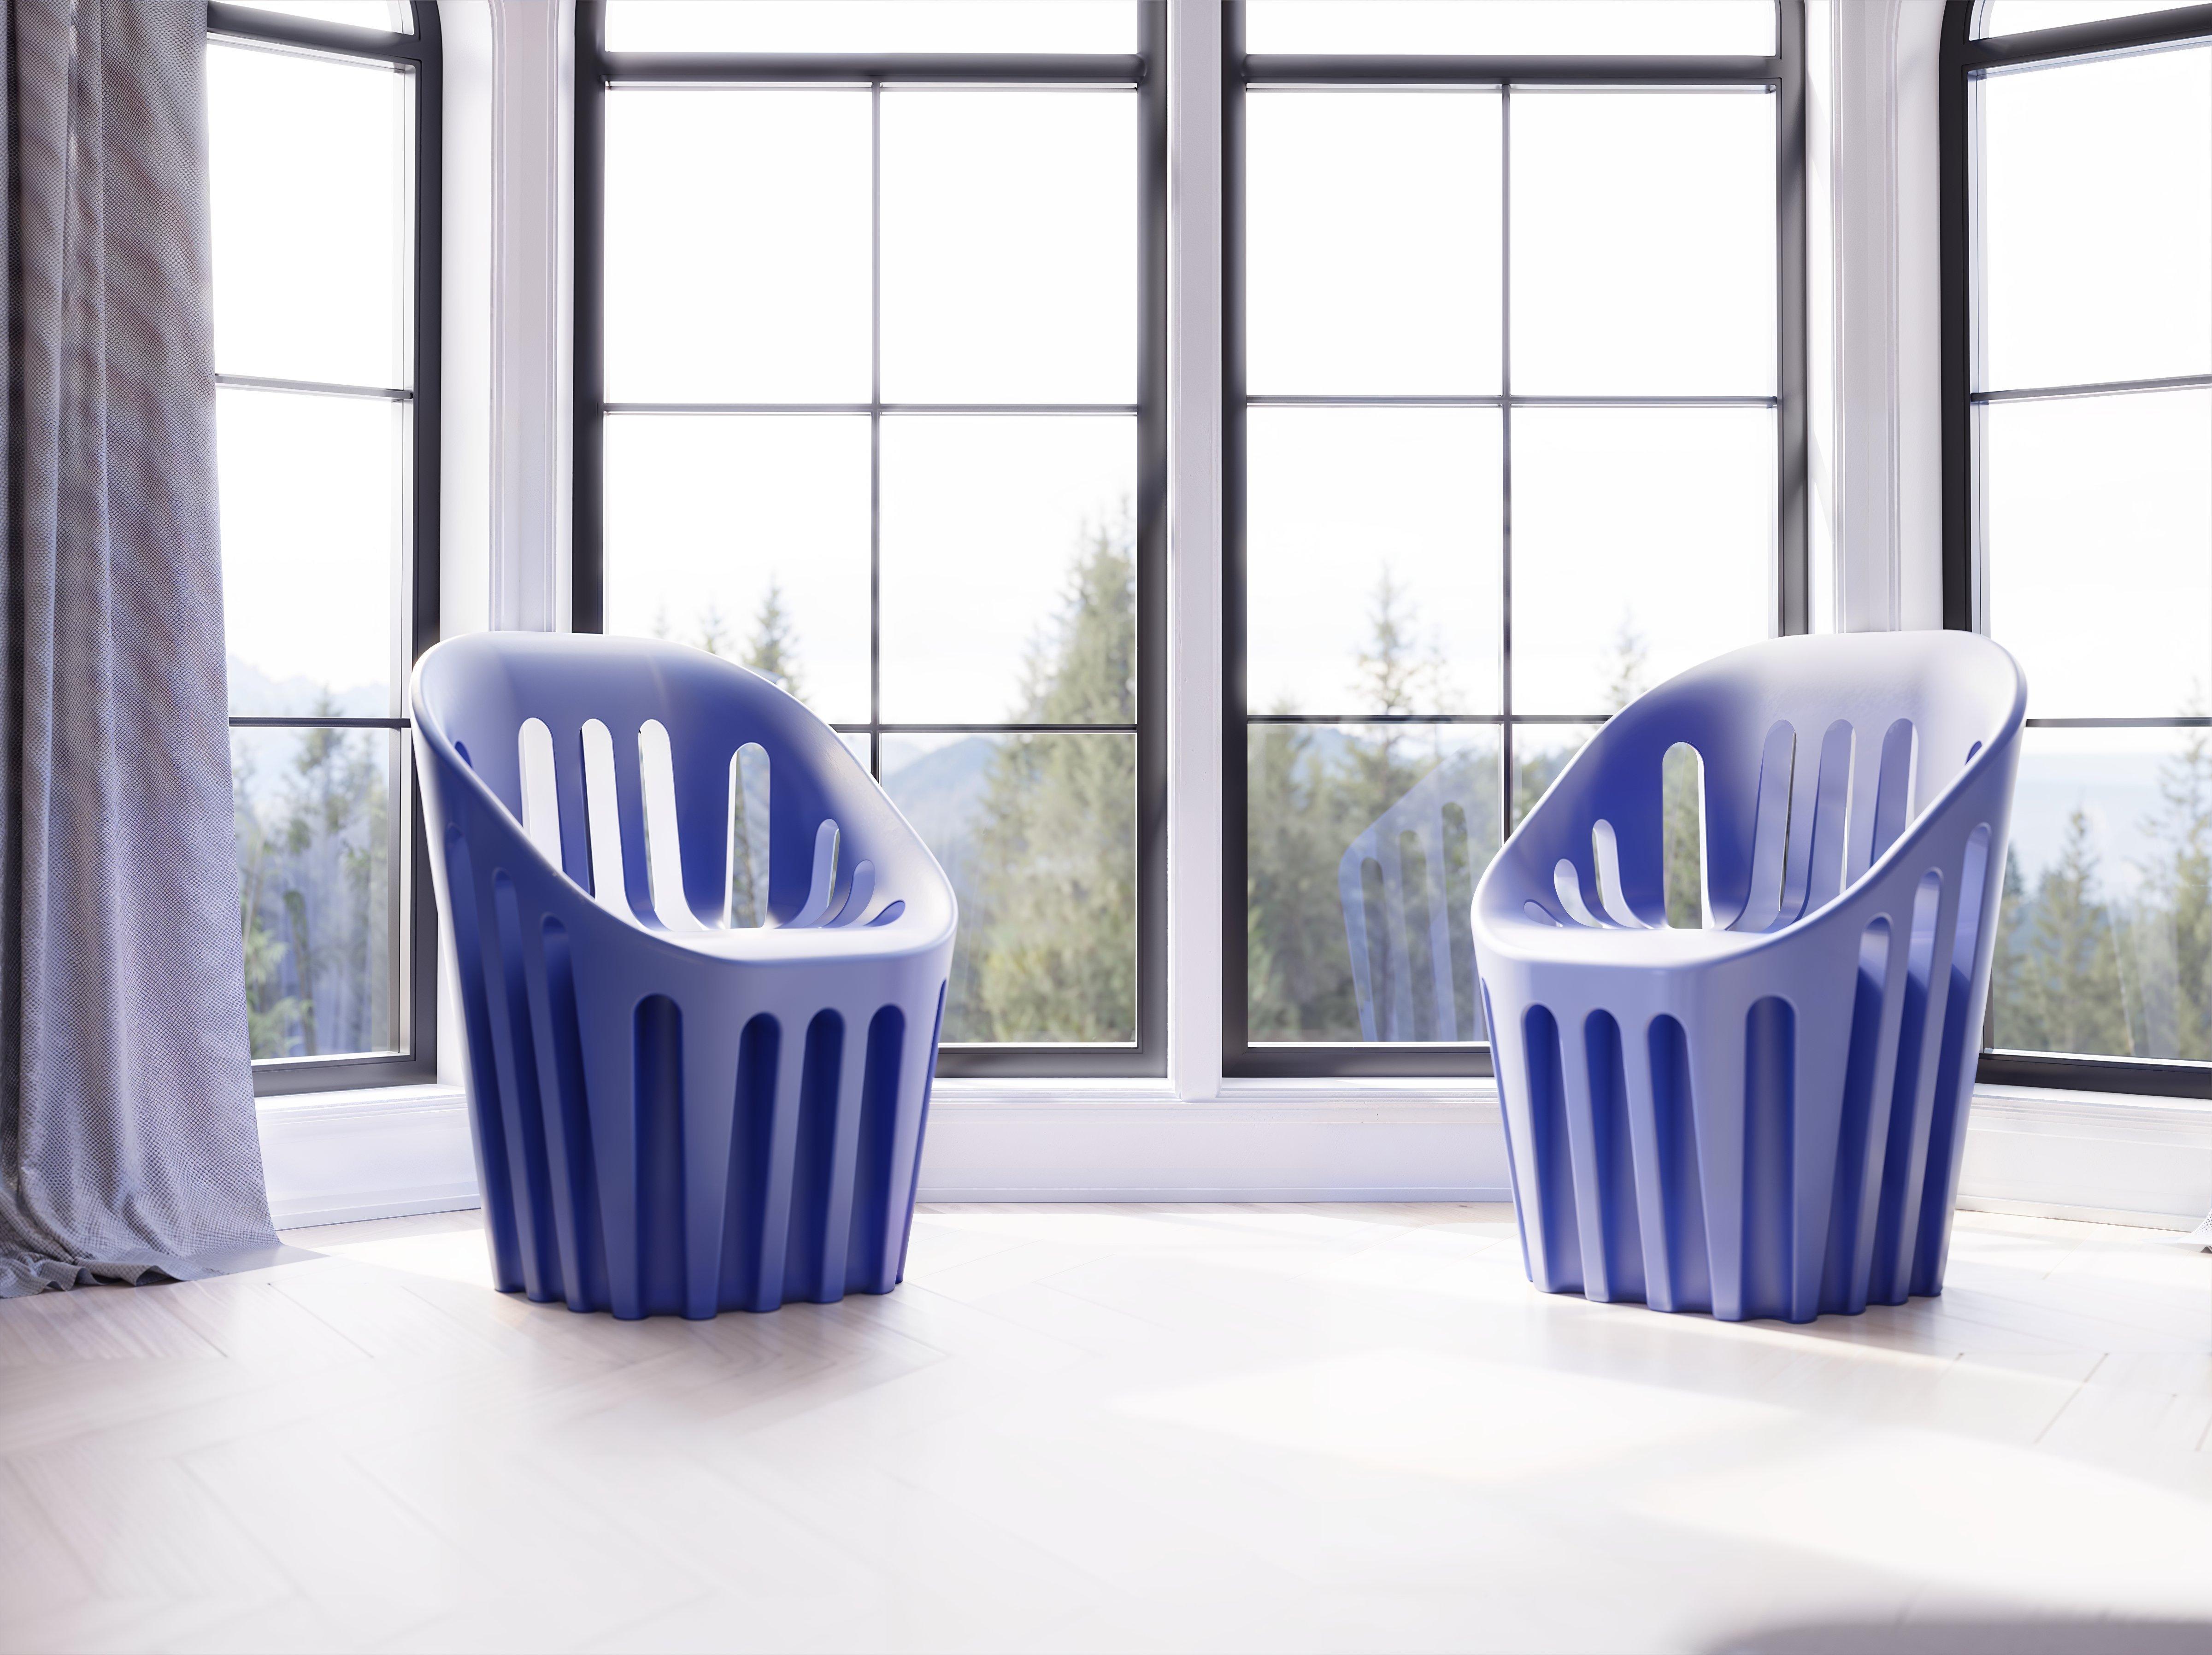 Flammenroter Coliseum-Stuhl von Alvaro Uribe
Abmessungen: T 65 x B 66 x H 86 cm. Sitzhöhe: 45 cm.
MATERIALEN: Polyethylen.
Gewicht: 11 kg.

Erhältlich in verschiedenen Farbvarianten. Dieses Produkt ist für die Verwendung im Innen- und Außenbereich